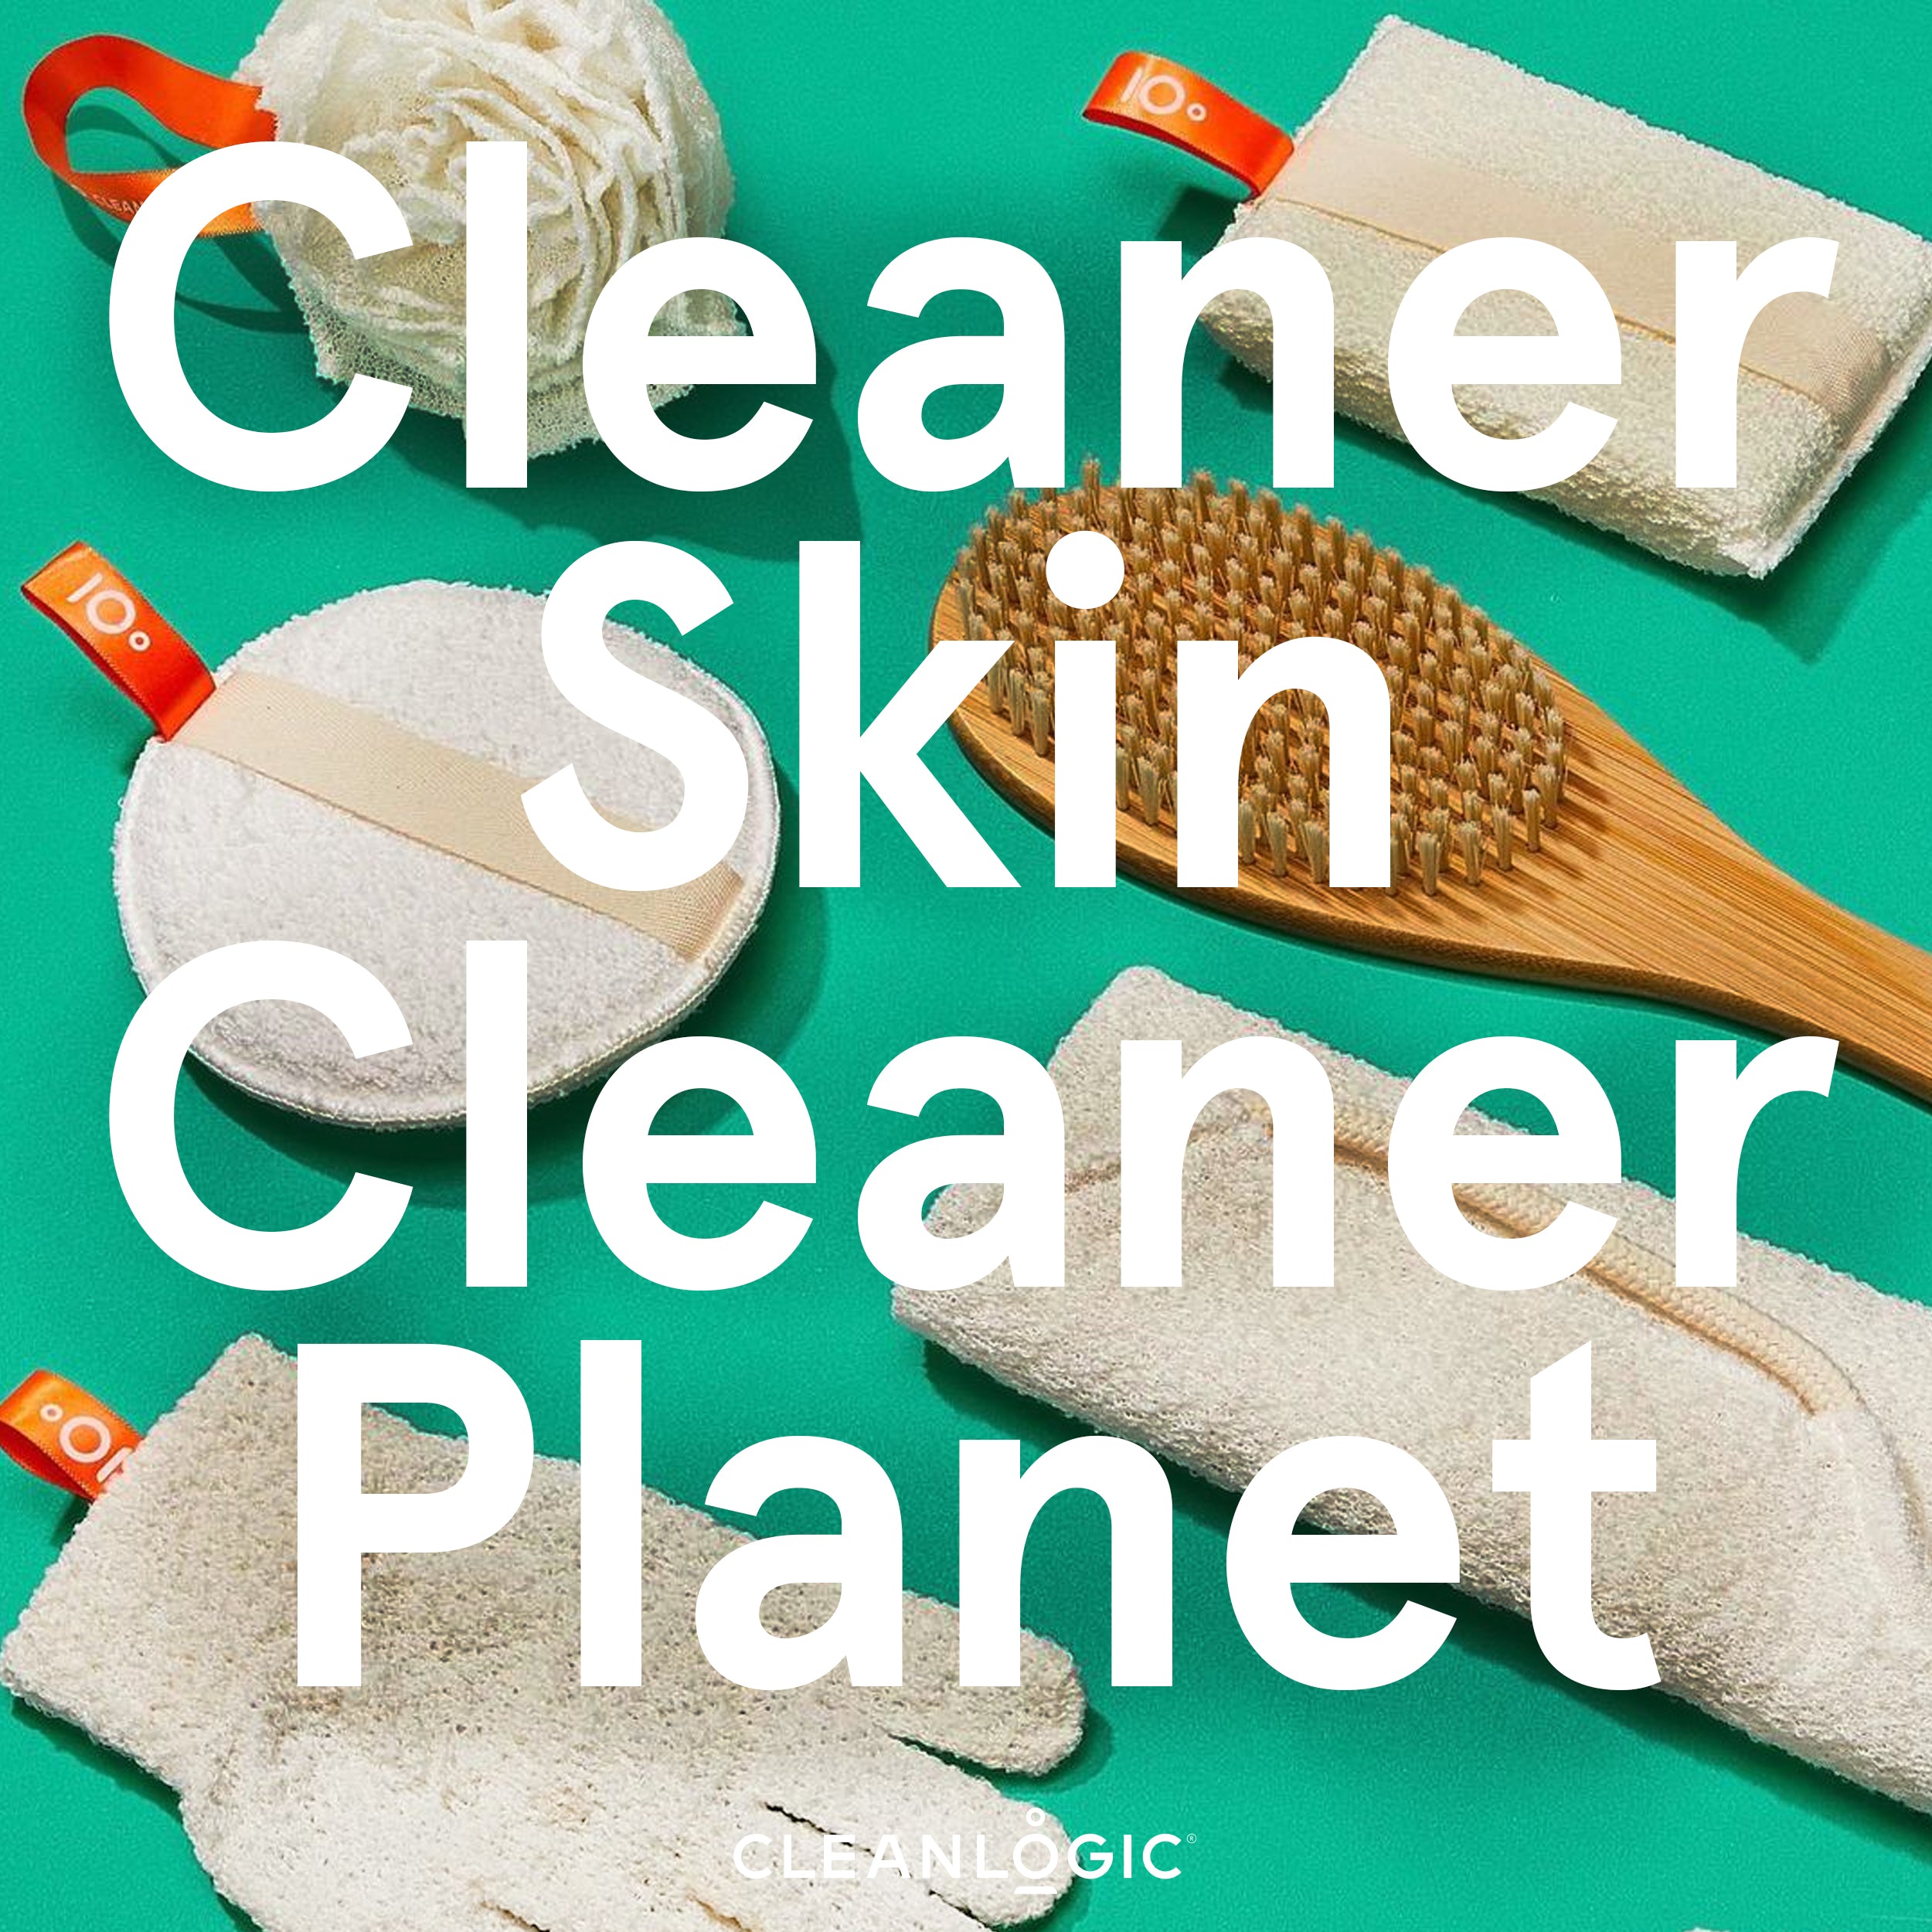 Cleanlogic Sustainable Eco-Friendly Exfoliation Gift Set